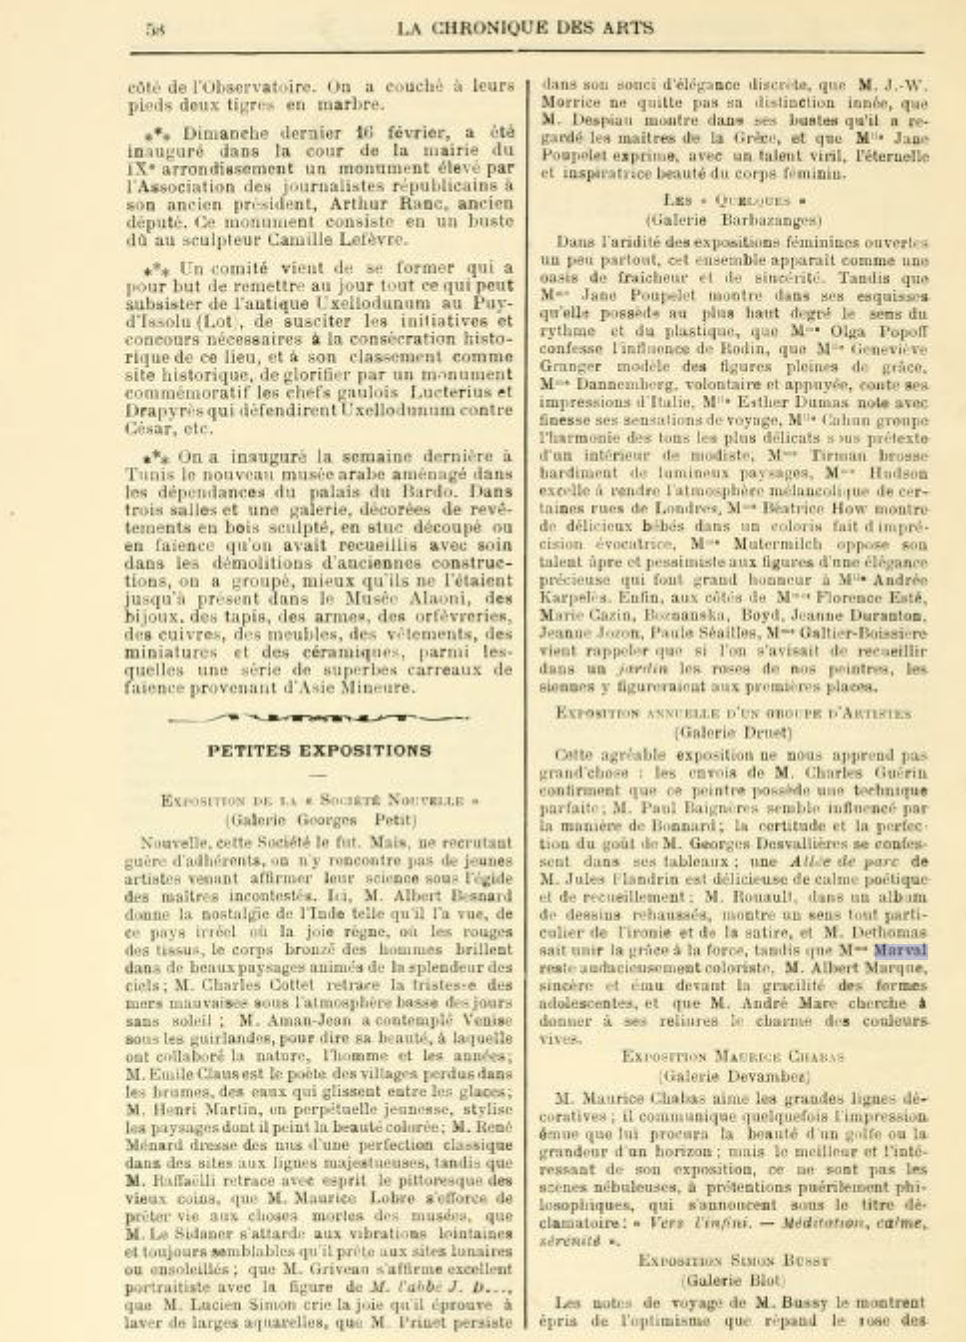  Chronique des Arts et de la Curiosité, Gazette des Beaux-Arts, février 1913 (Copy)